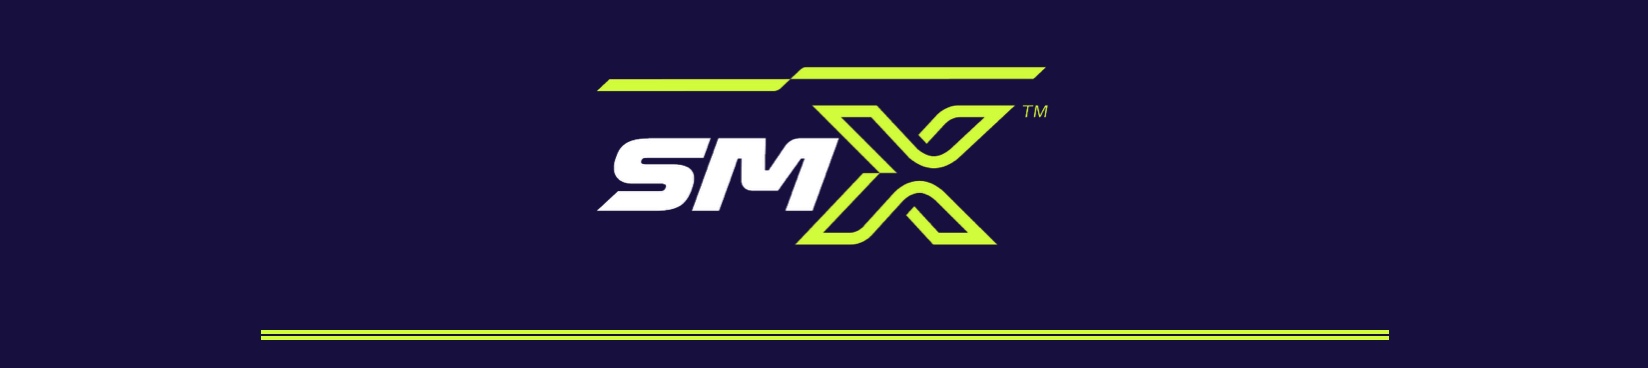 SMX logo banner